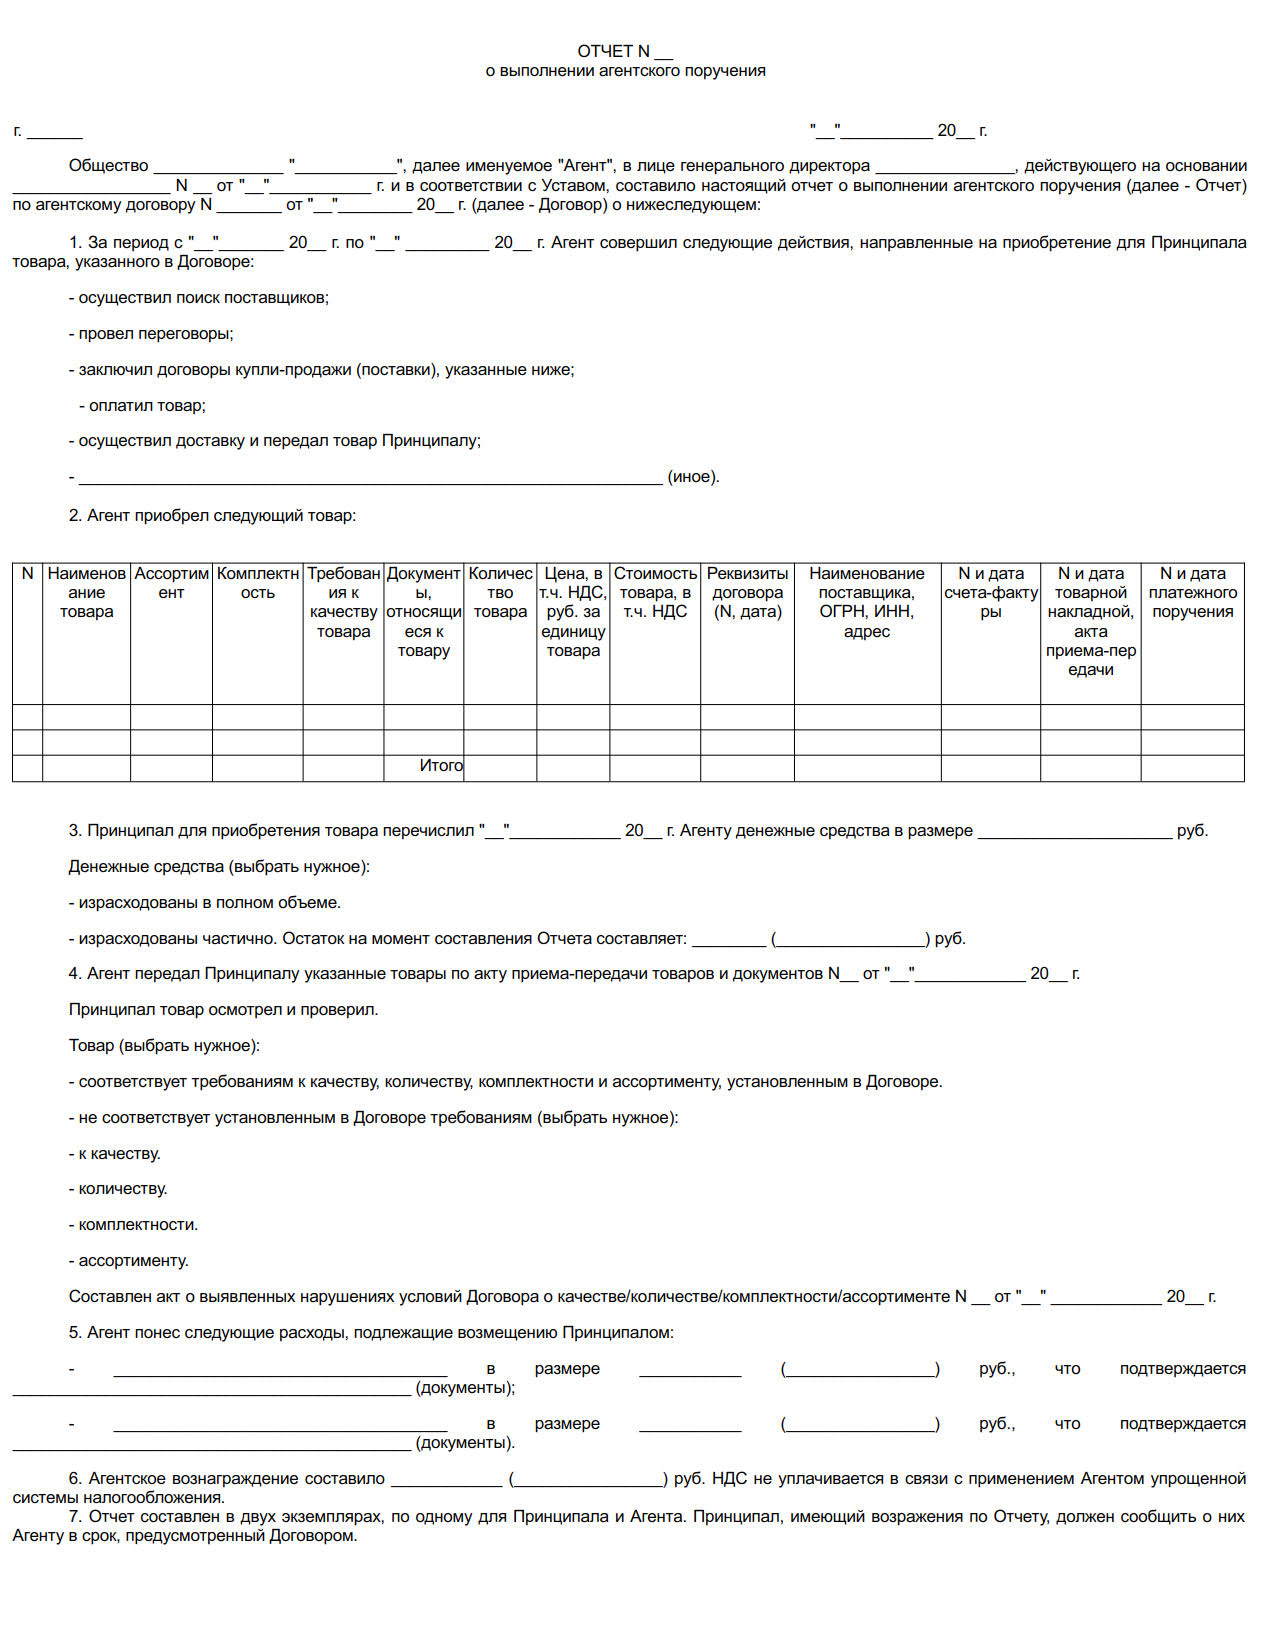 Акт по агентскому договору (Документ Савченко О.С.)